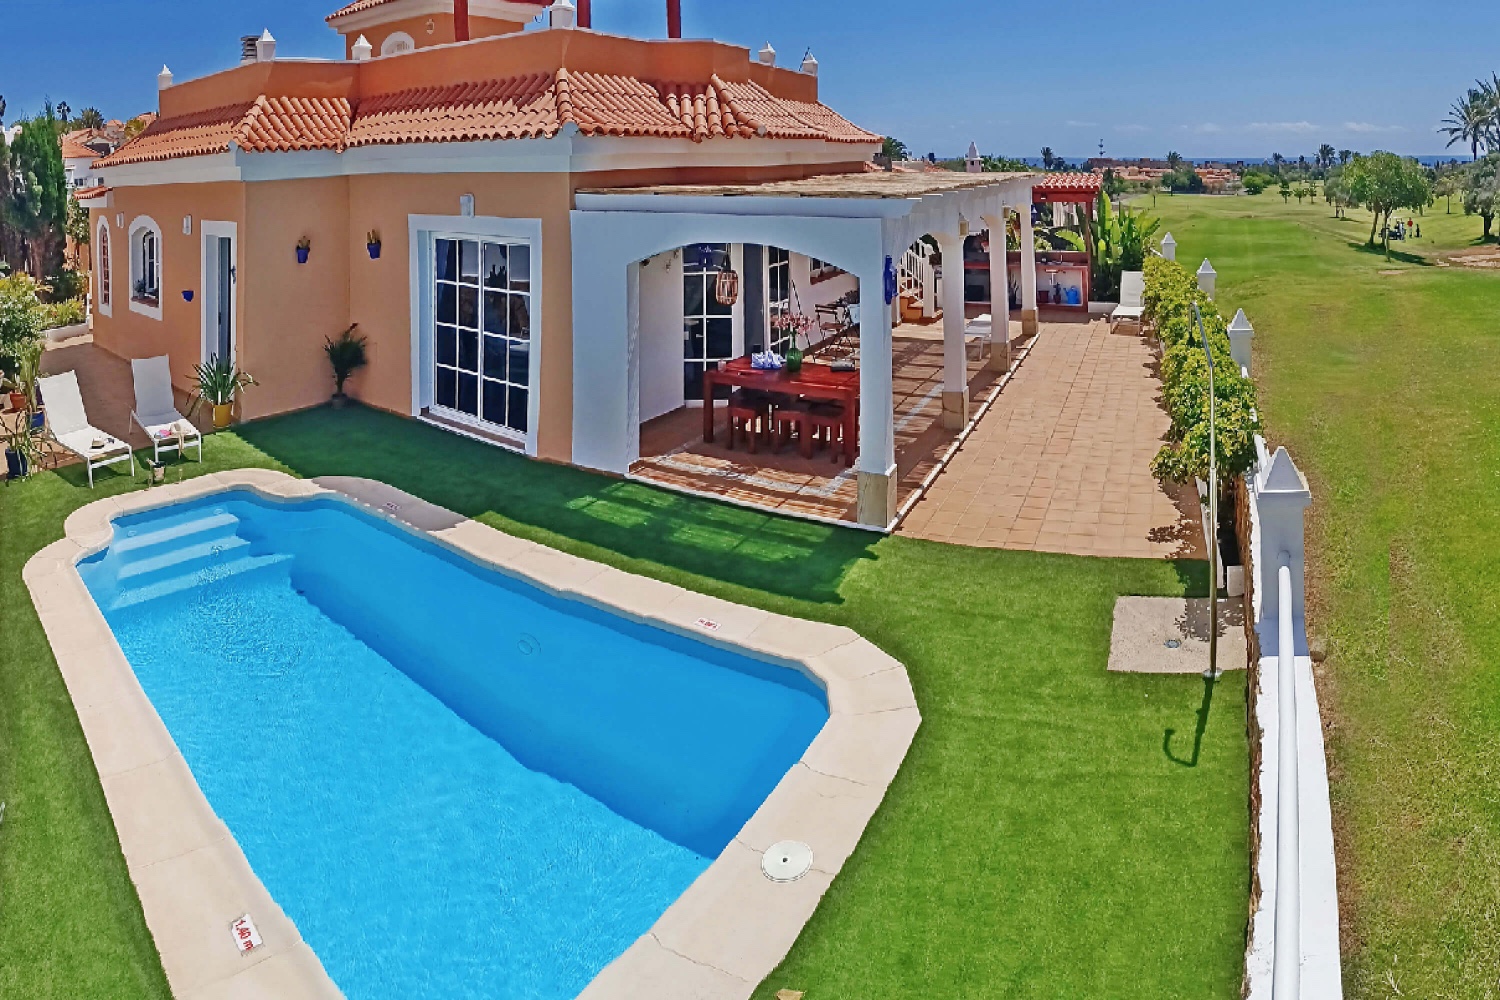 Schöne Villa mit vier Schlafzimmern, großem Privatool und Meerblick in perfekter Lage direkt am Golfplatz von Caleta de Fuste